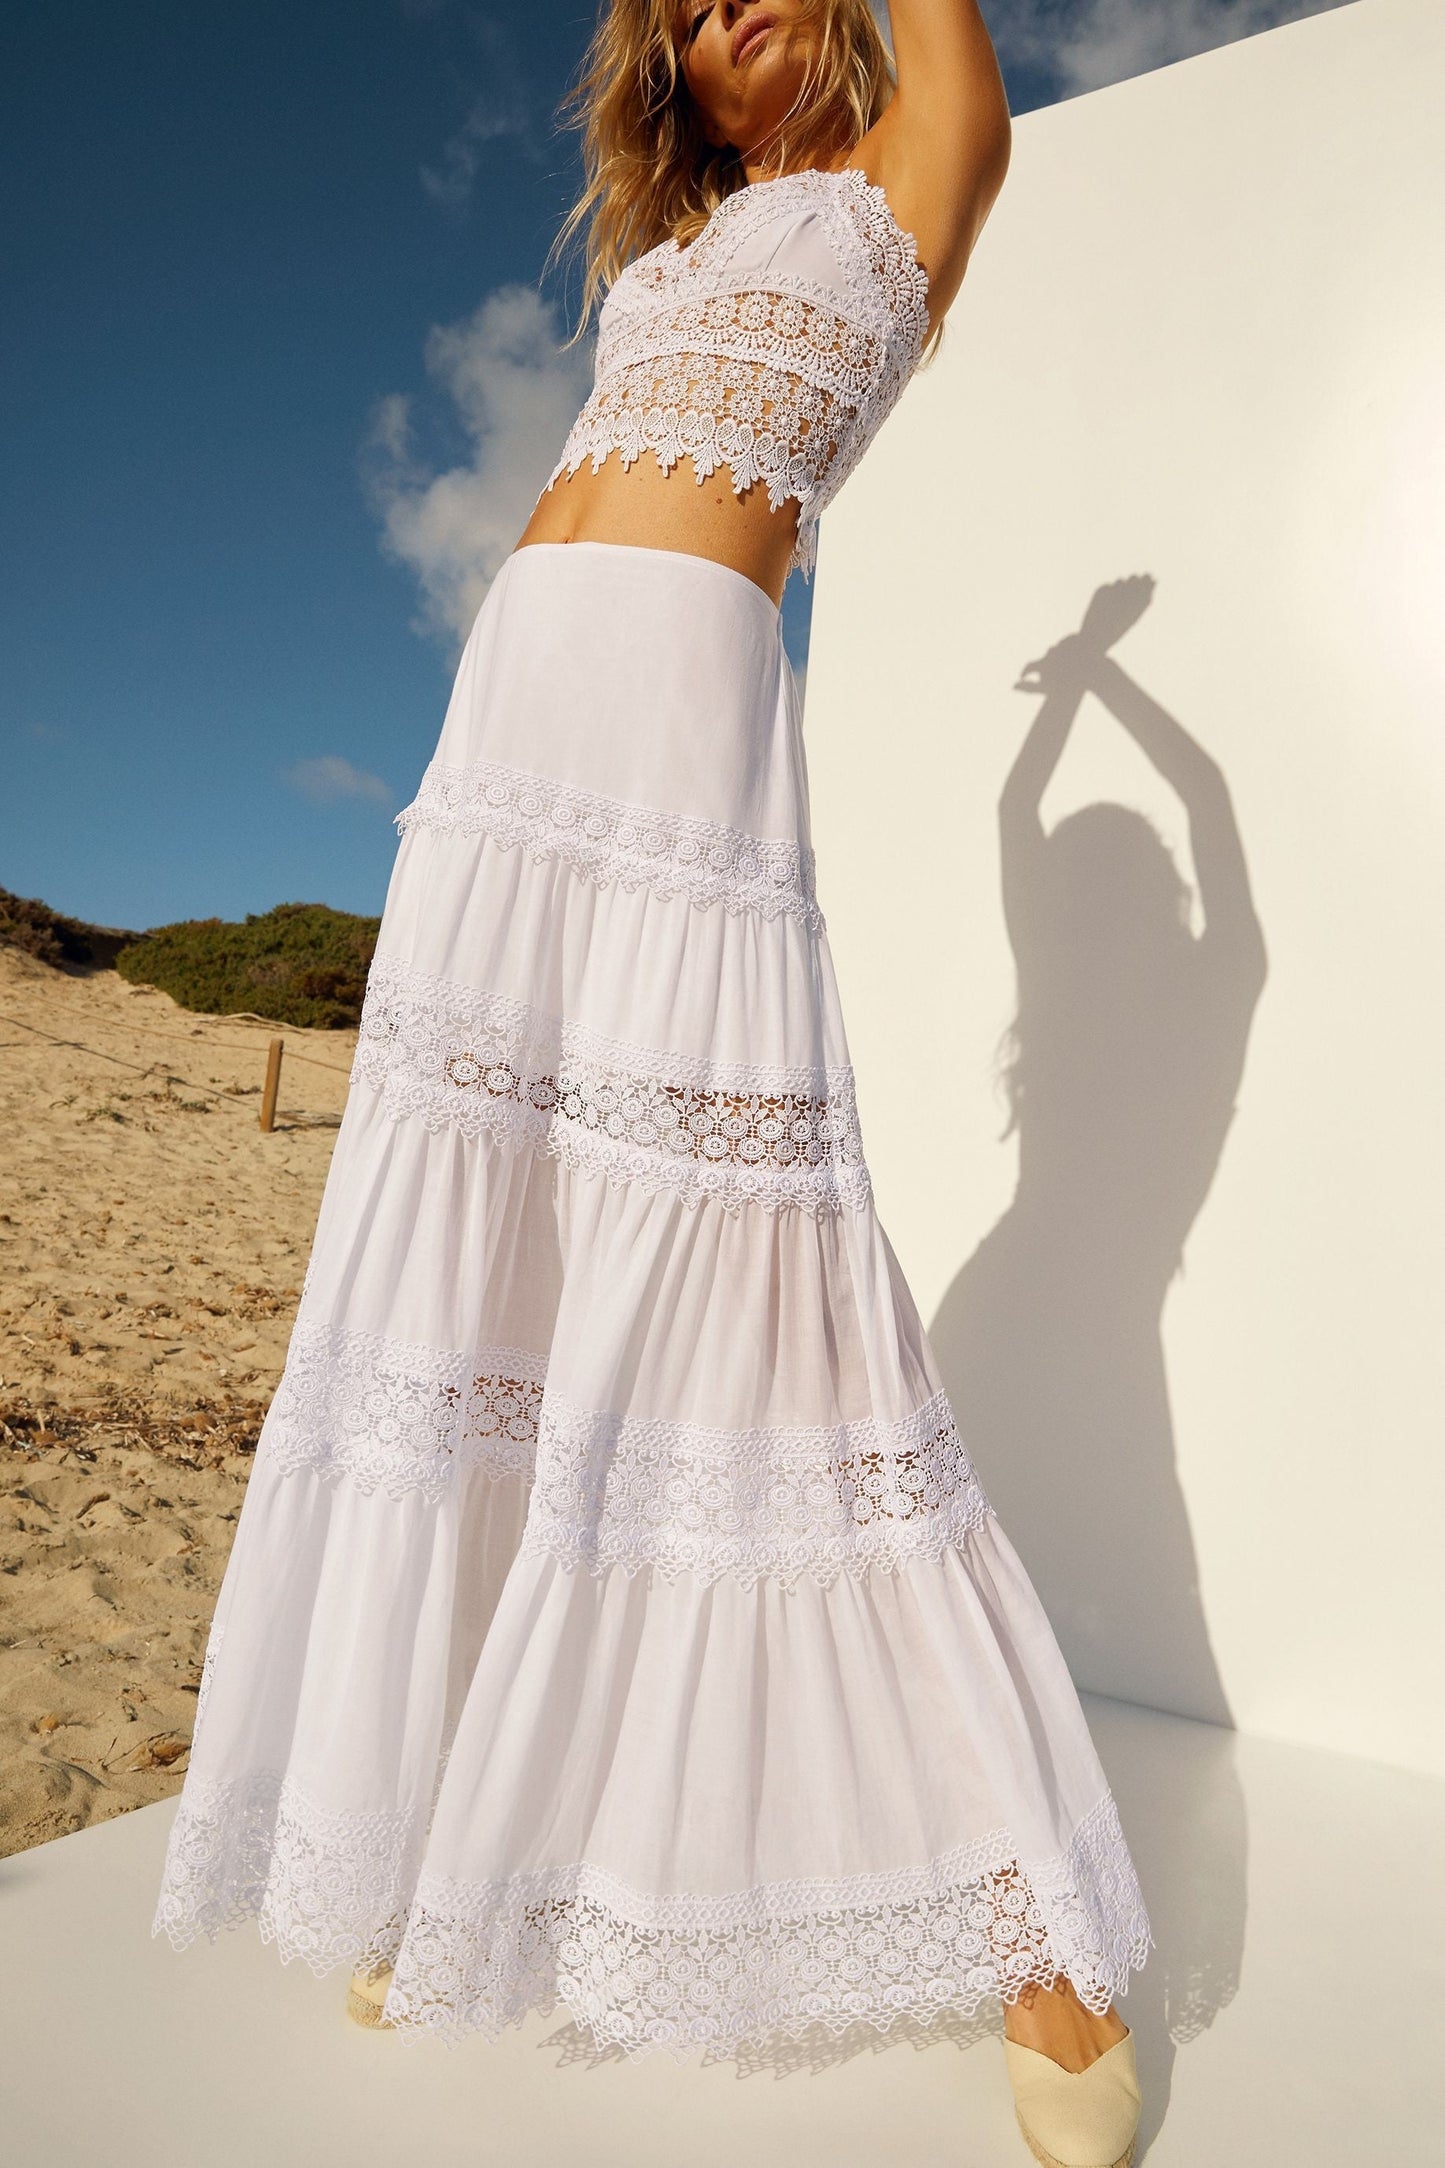 Charo Ruiz Ibiza Ruth Long Skirt - Premium Skirts from Charo Ruiz - Just $495! Shop now at Marina St Barth